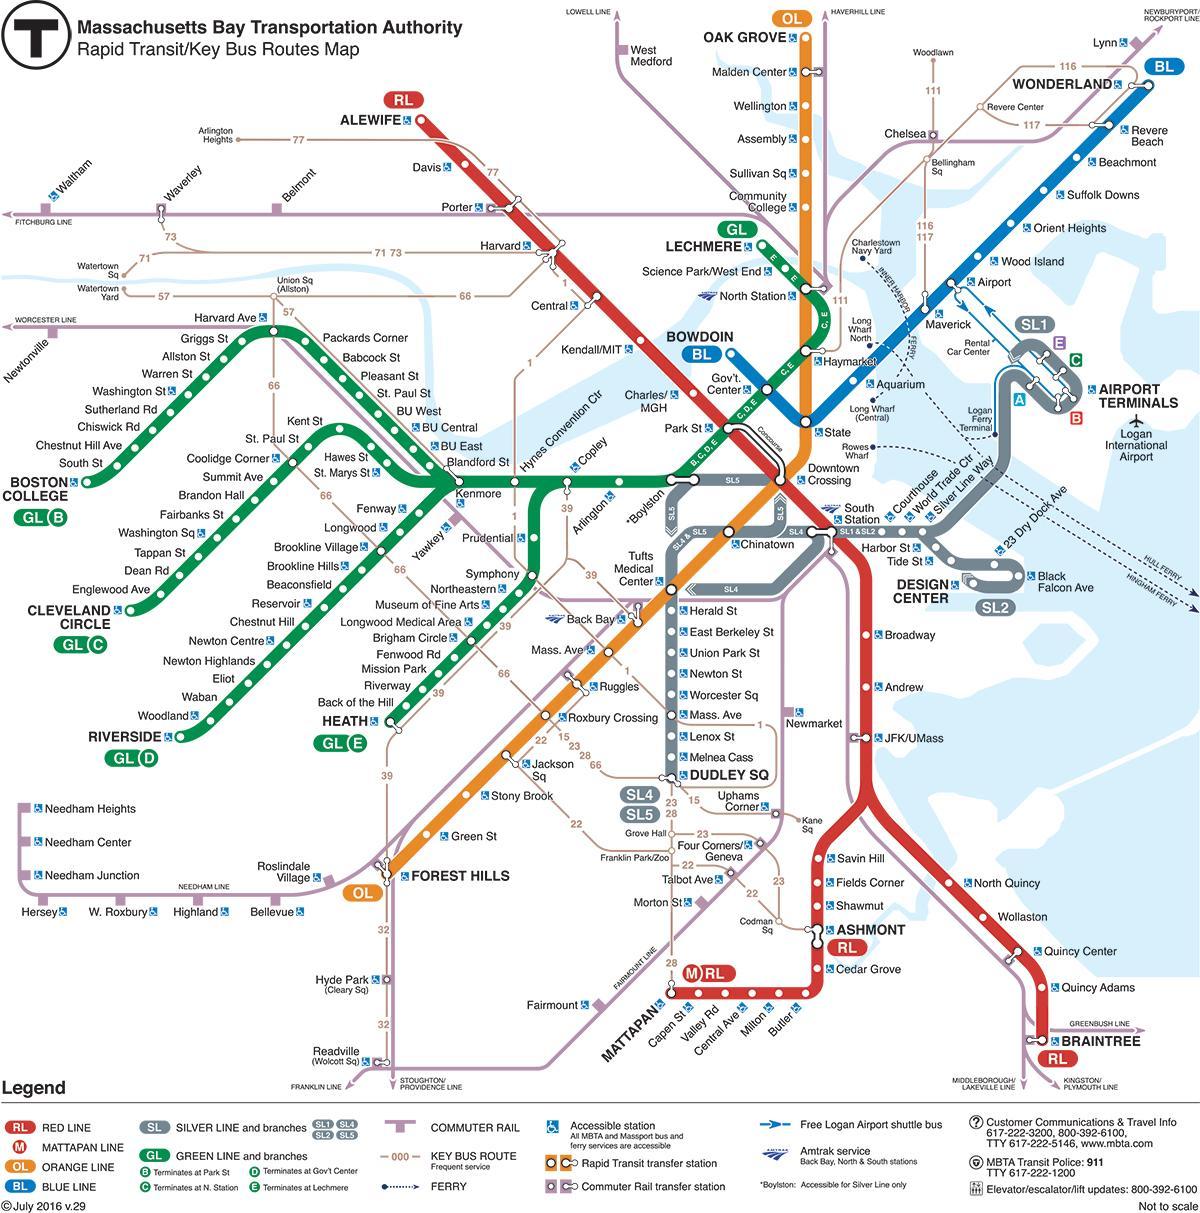 la ligne verte de la carte de Boston